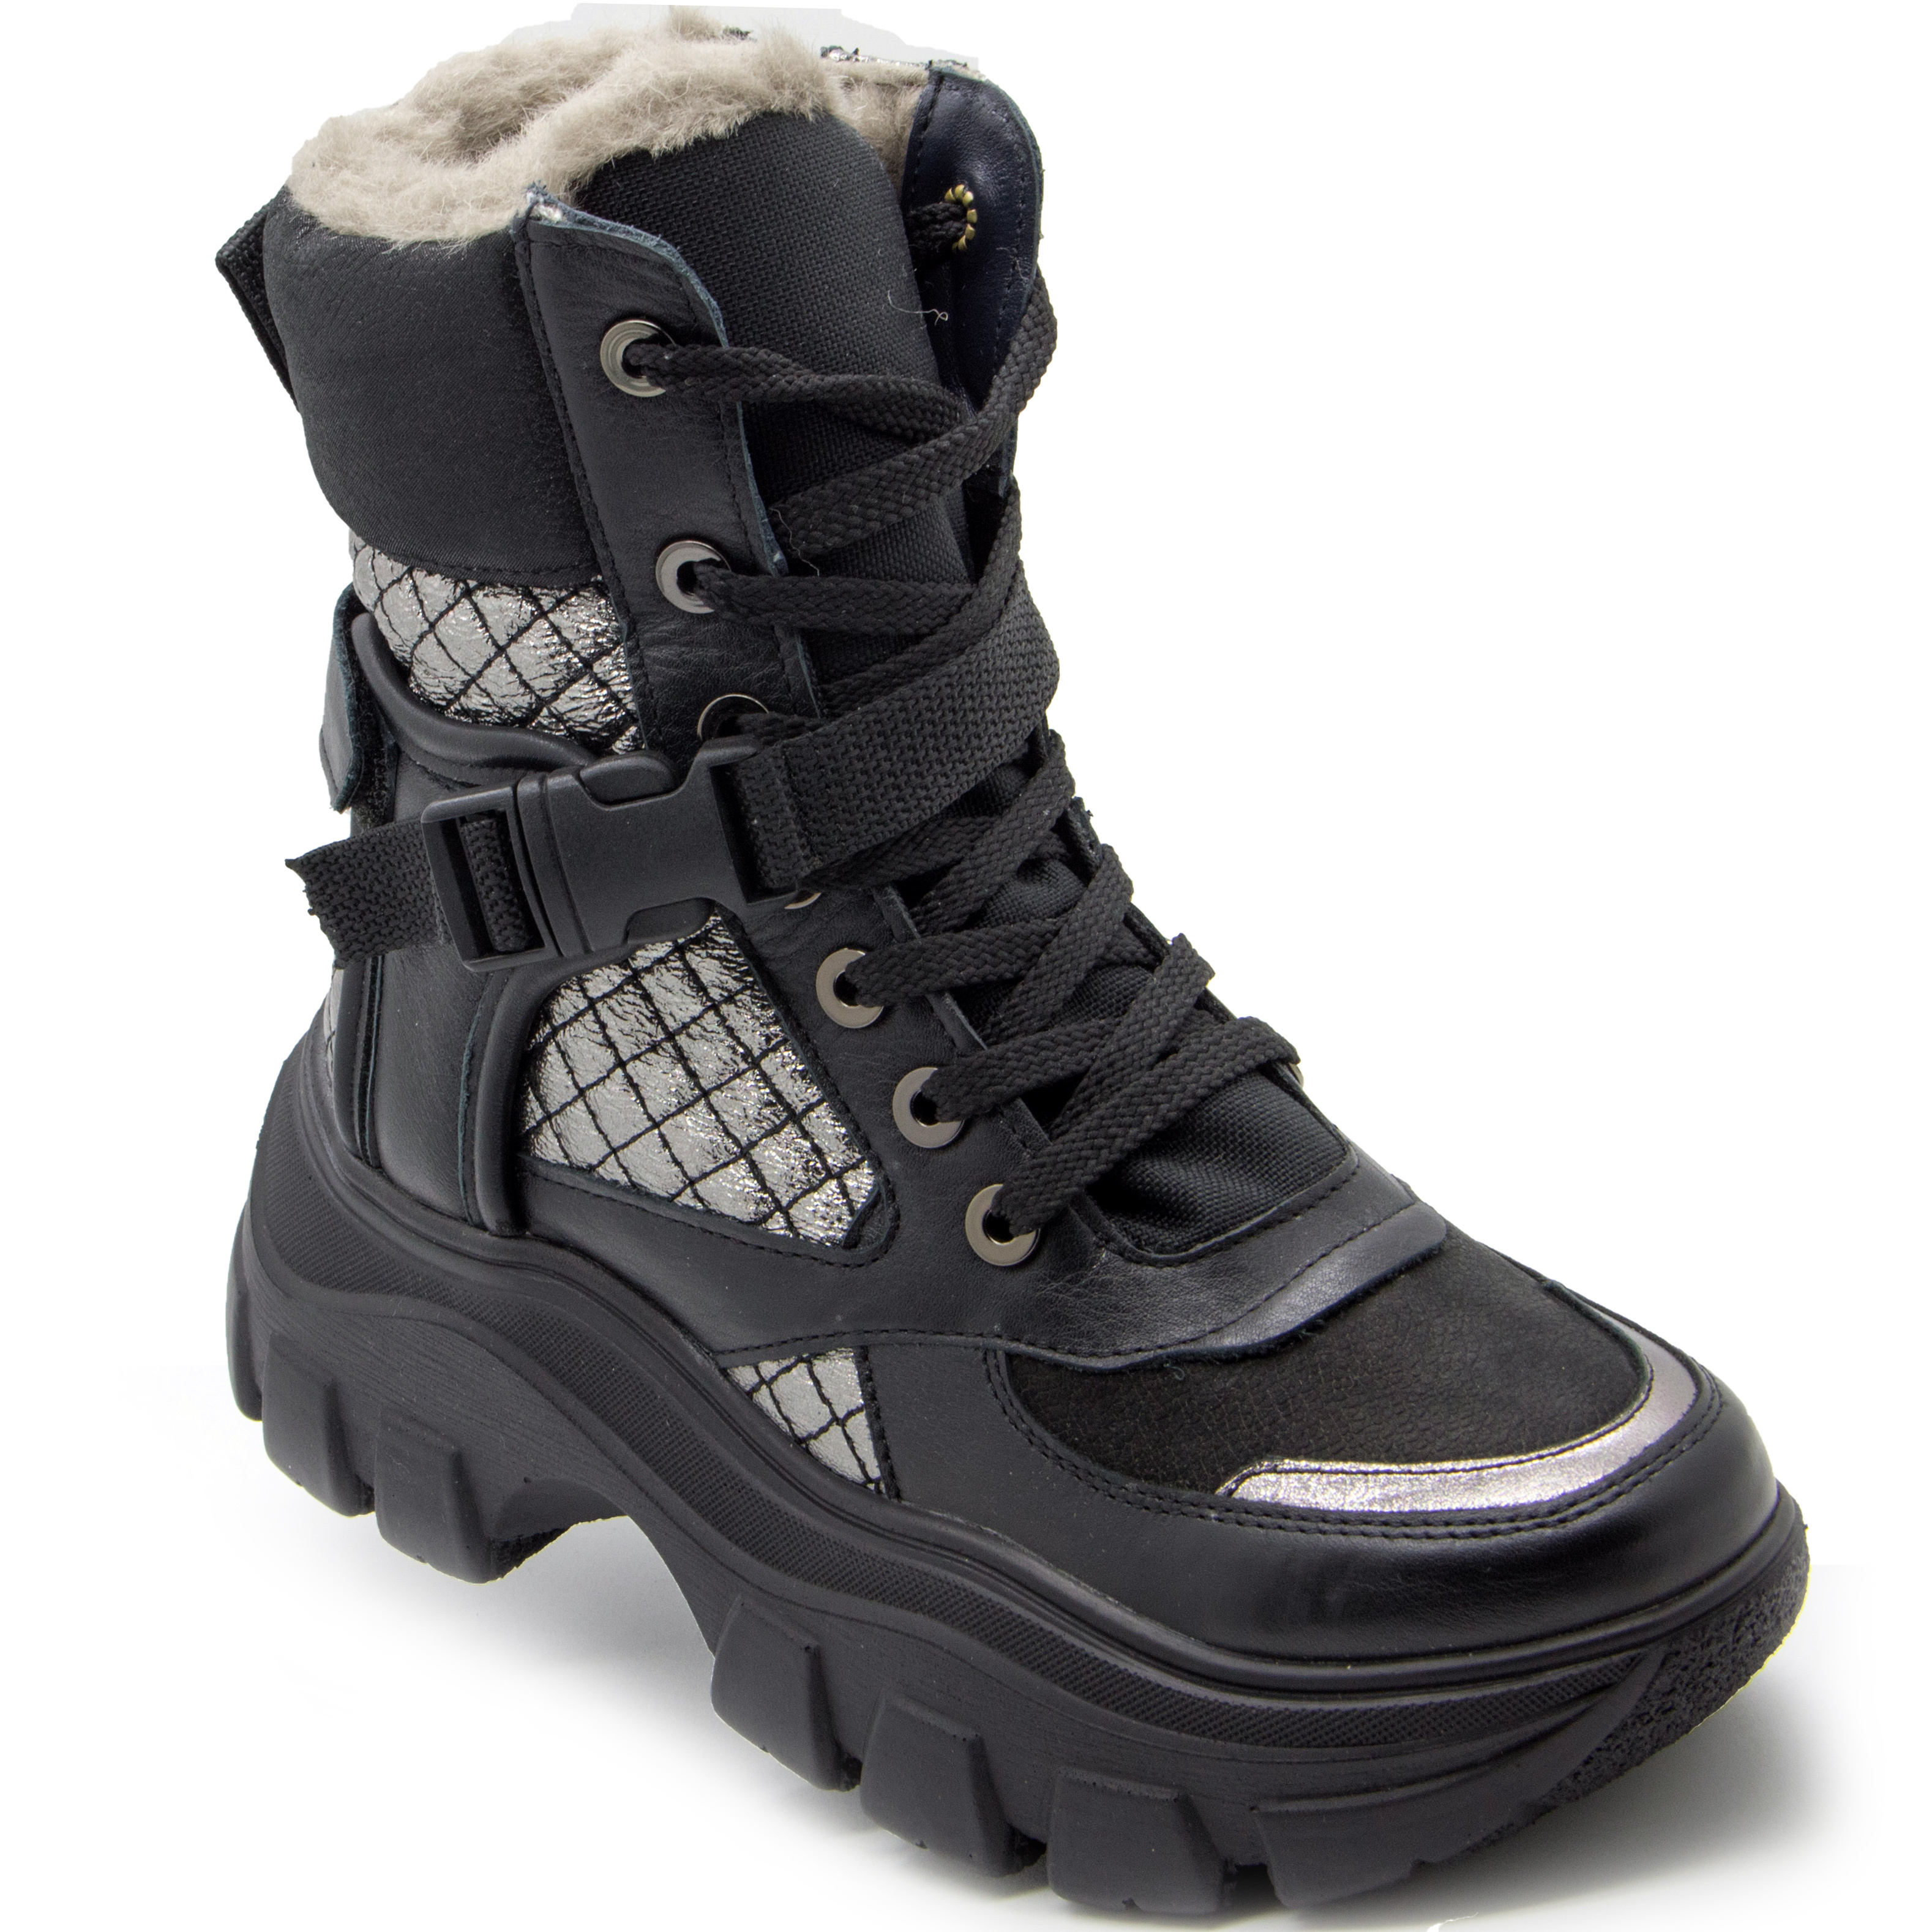 Зимние ботинки (2225) материал Нубук, цвет Черный  для девочки 39-40 размеры – Sole Kids, Днепр